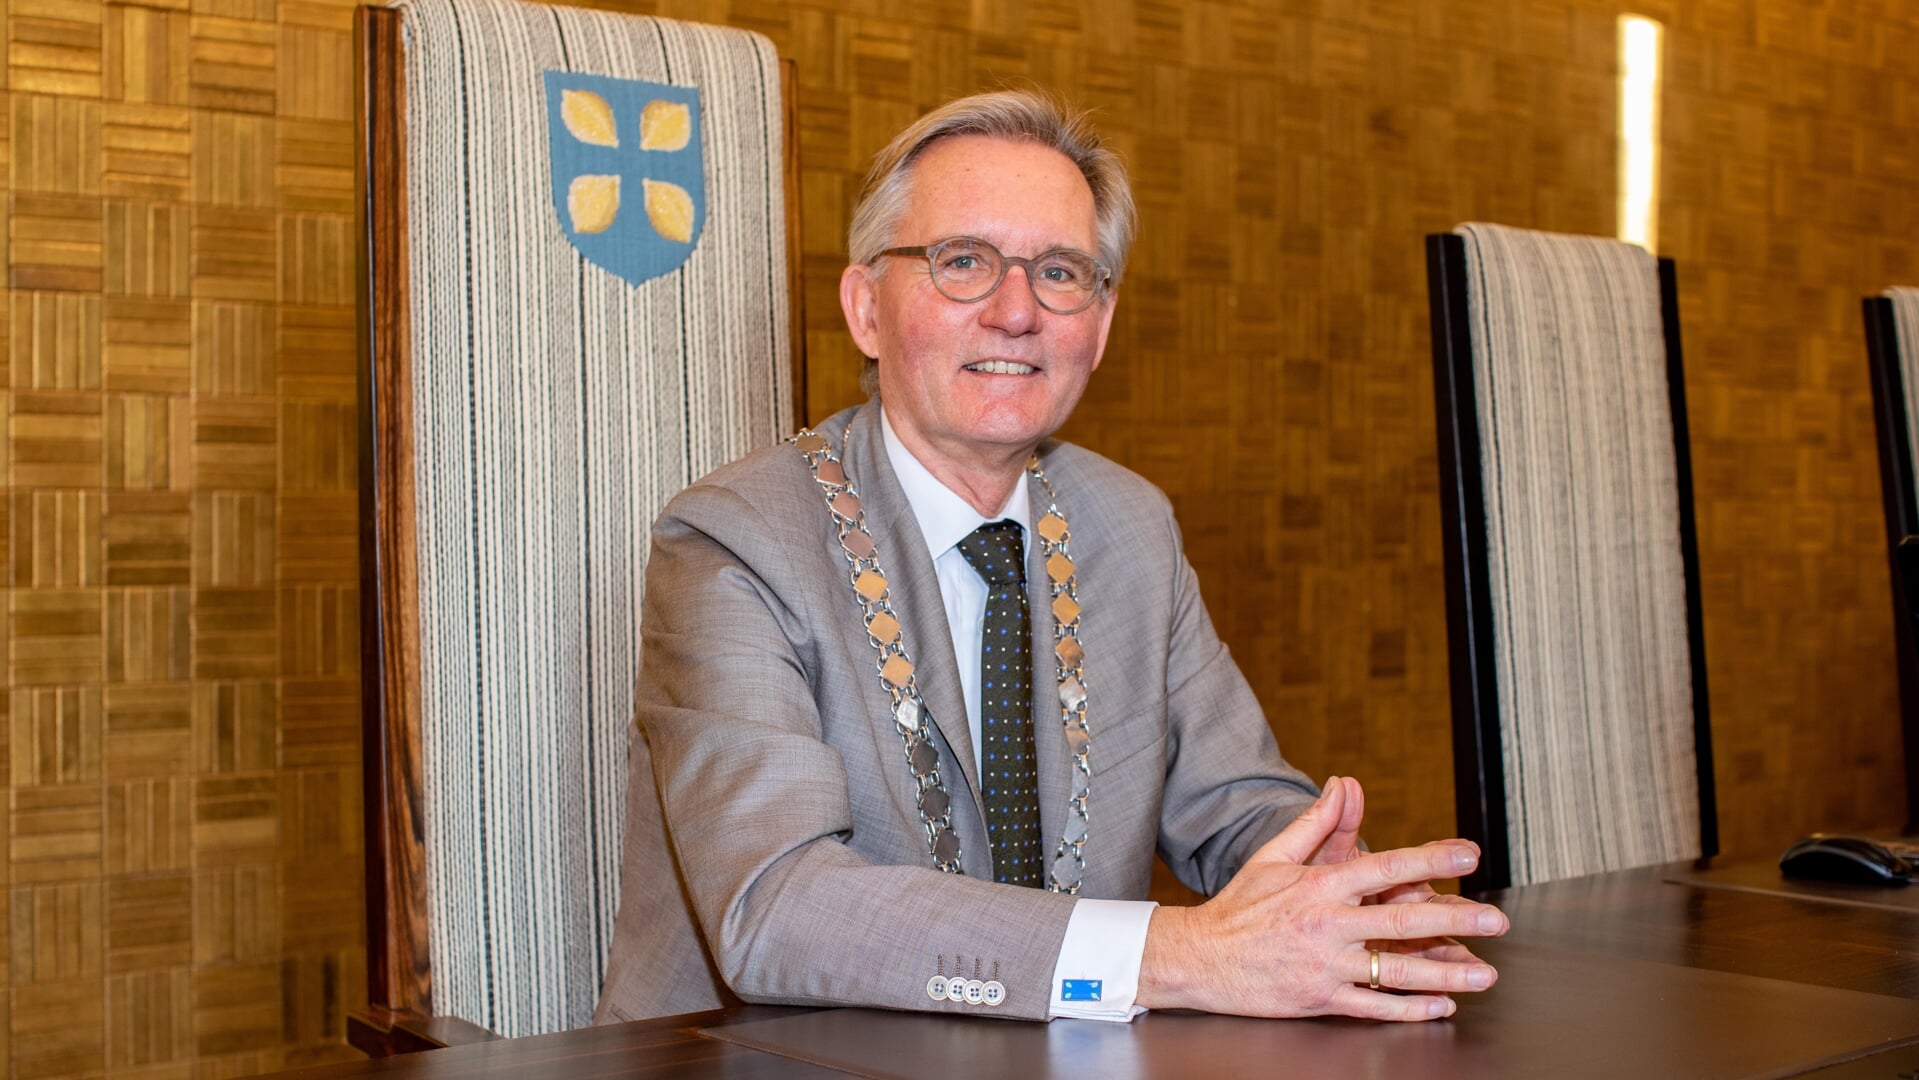 Burgemeester Van den Top: "Onze gemeente heeft zich van zijn beste kant laten zien."